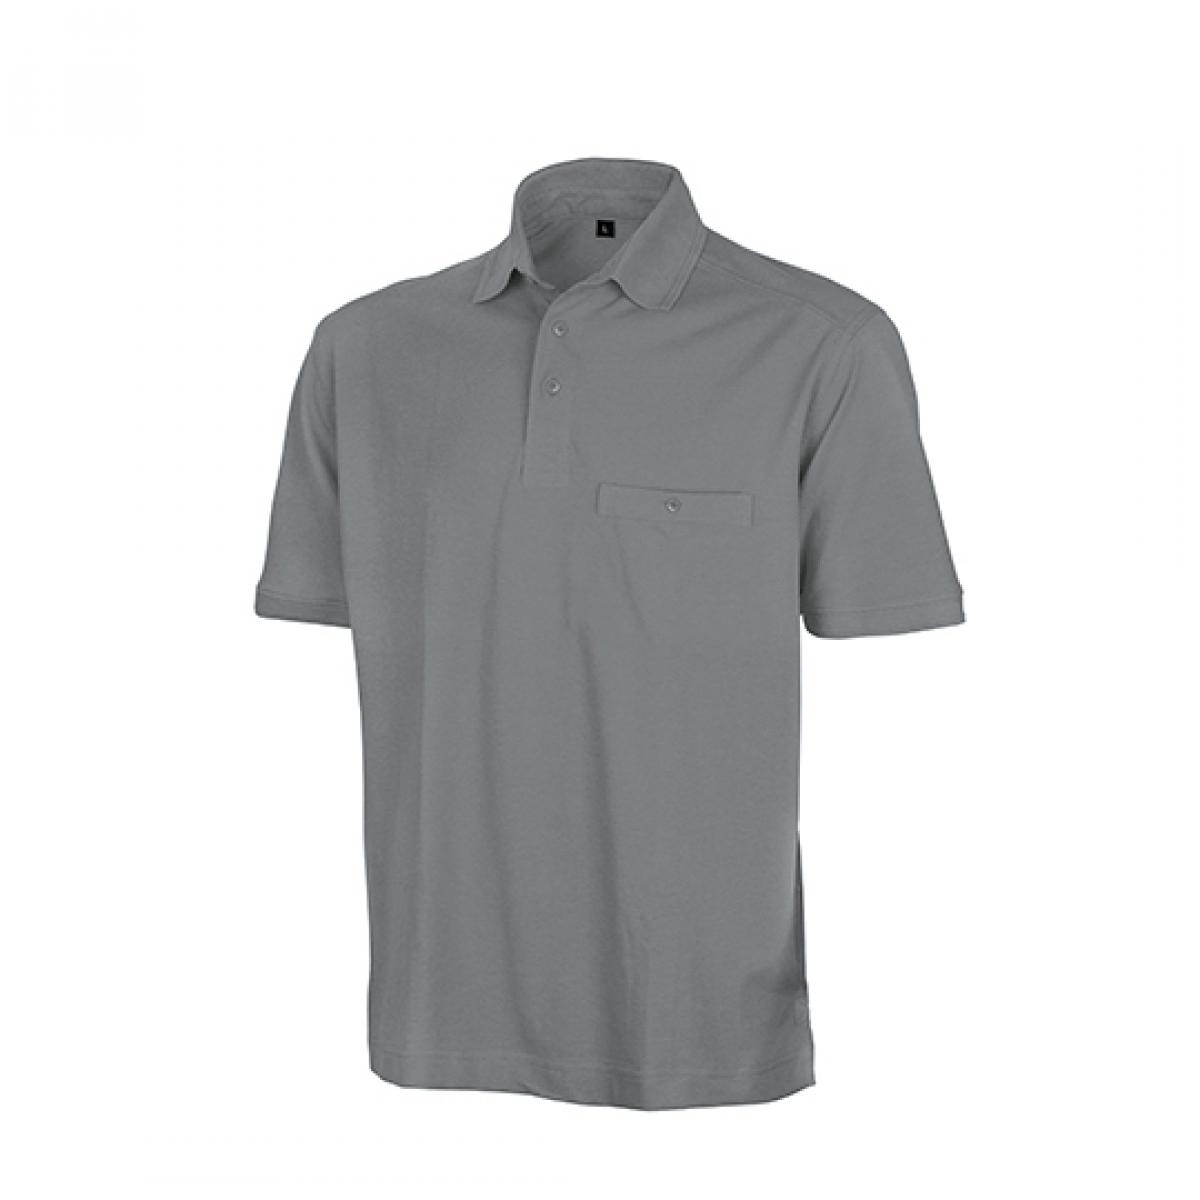 Hersteller: Result WORK-GUARD Herstellernummer: R312X Artikelbezeichnung: Herren Apex Polo Shirt / Strapazierfähig aus Mischgewebe Farbe: Workguard Grey